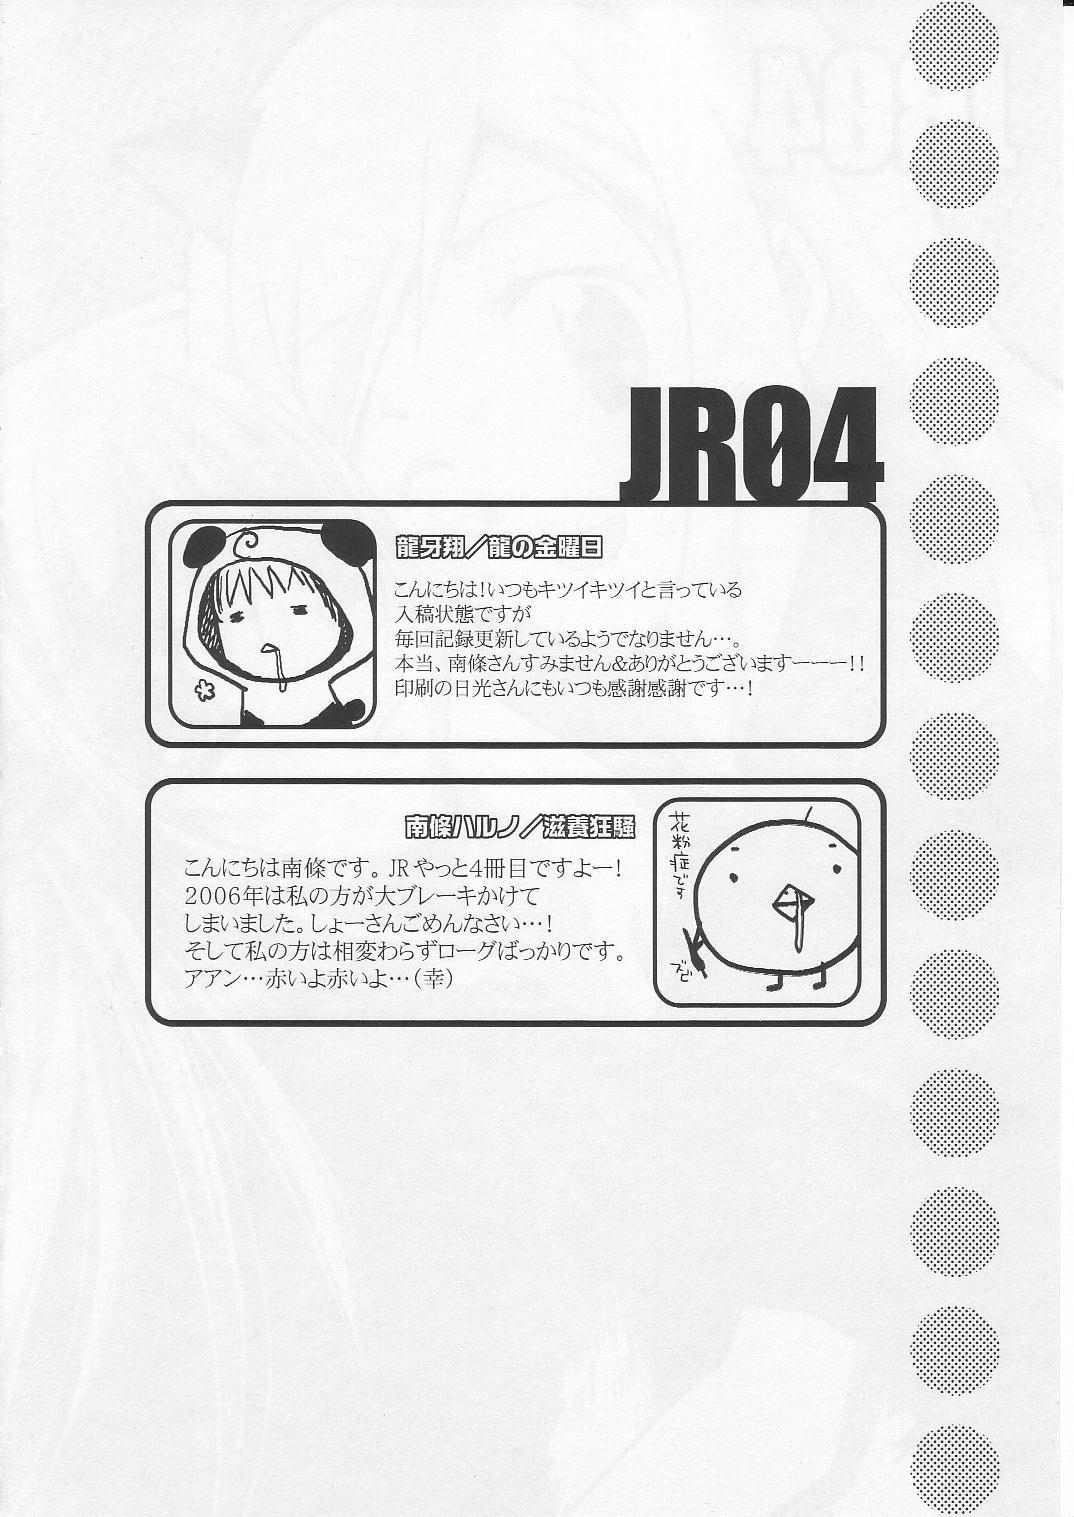 JR04 2